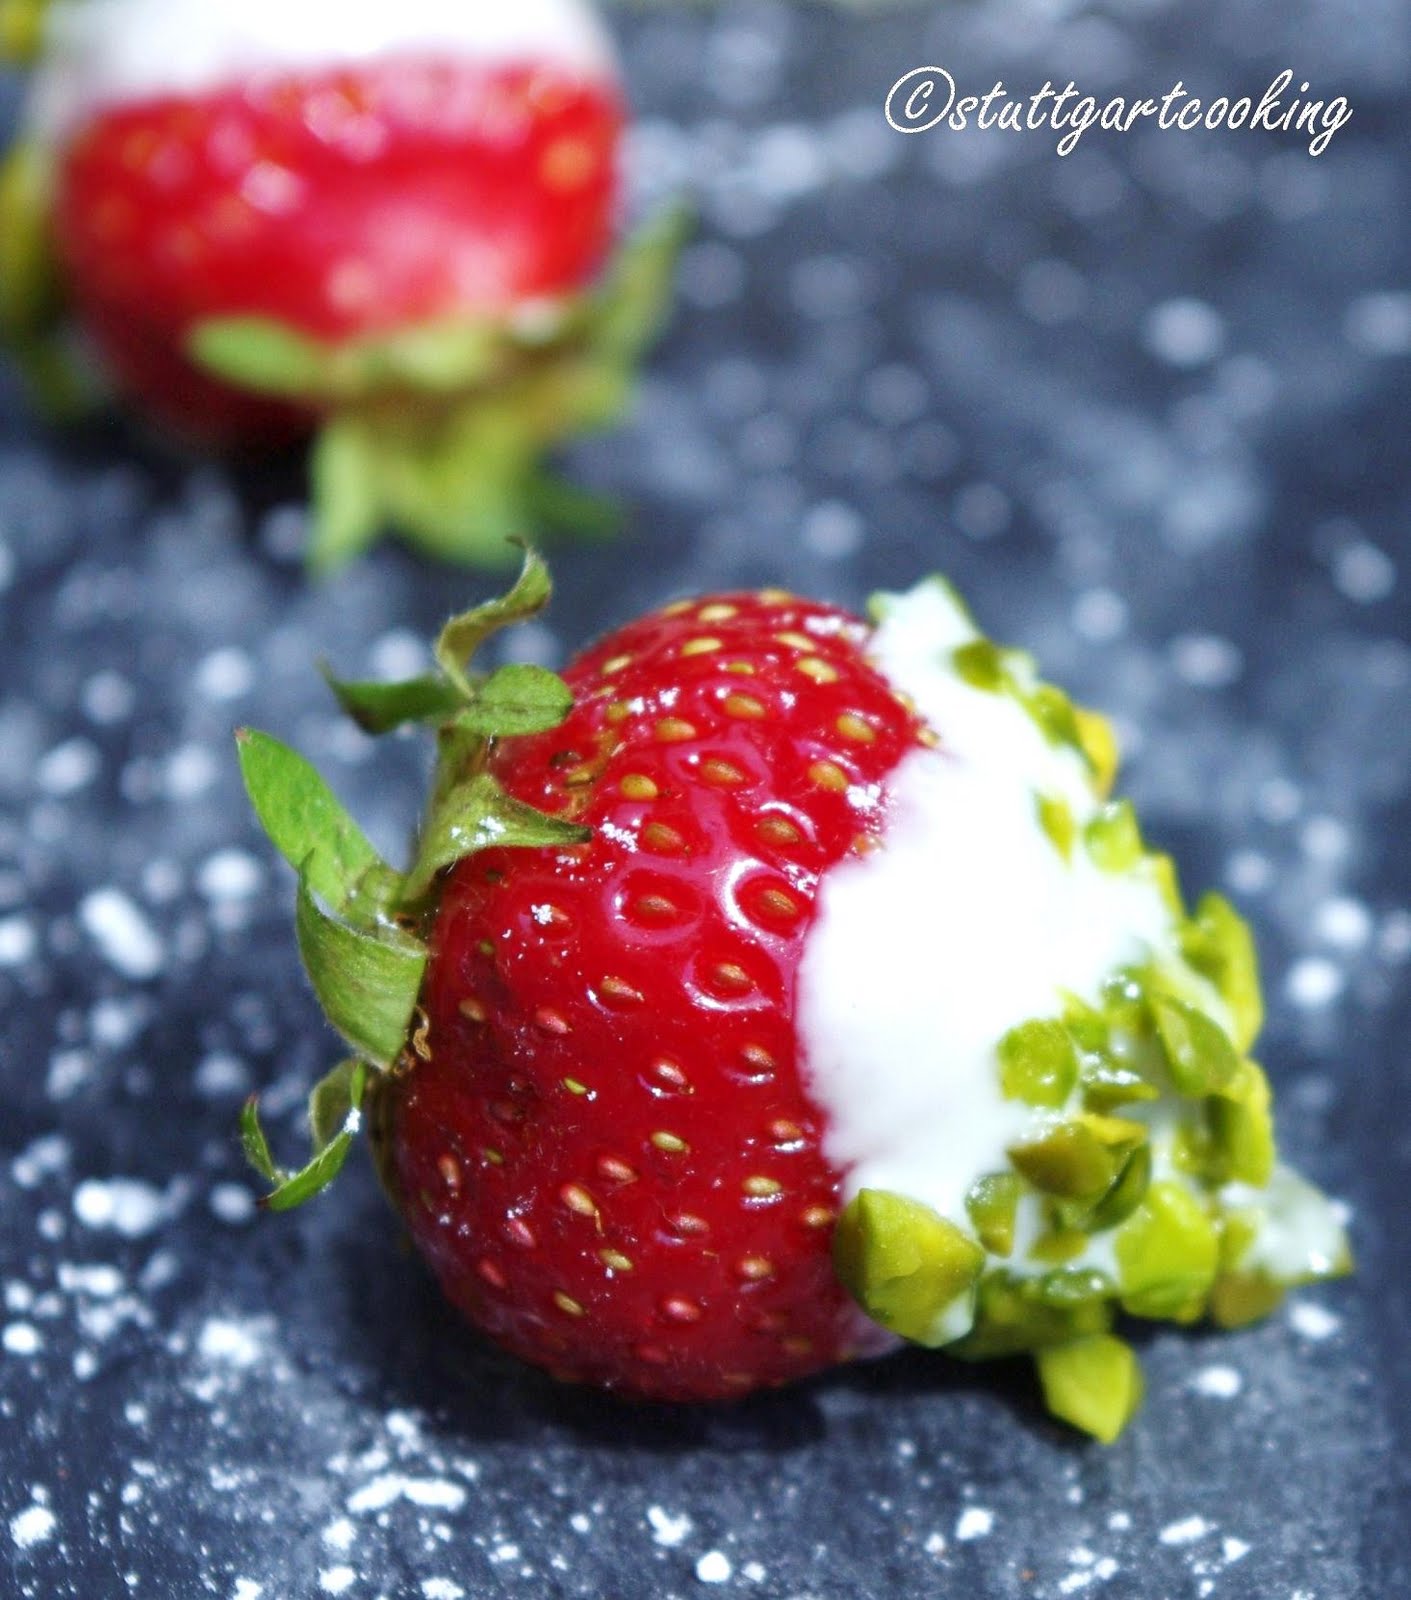 stuttgartcooking: Erdbeeren in warmer, weißer Schokolade getaucht und ...